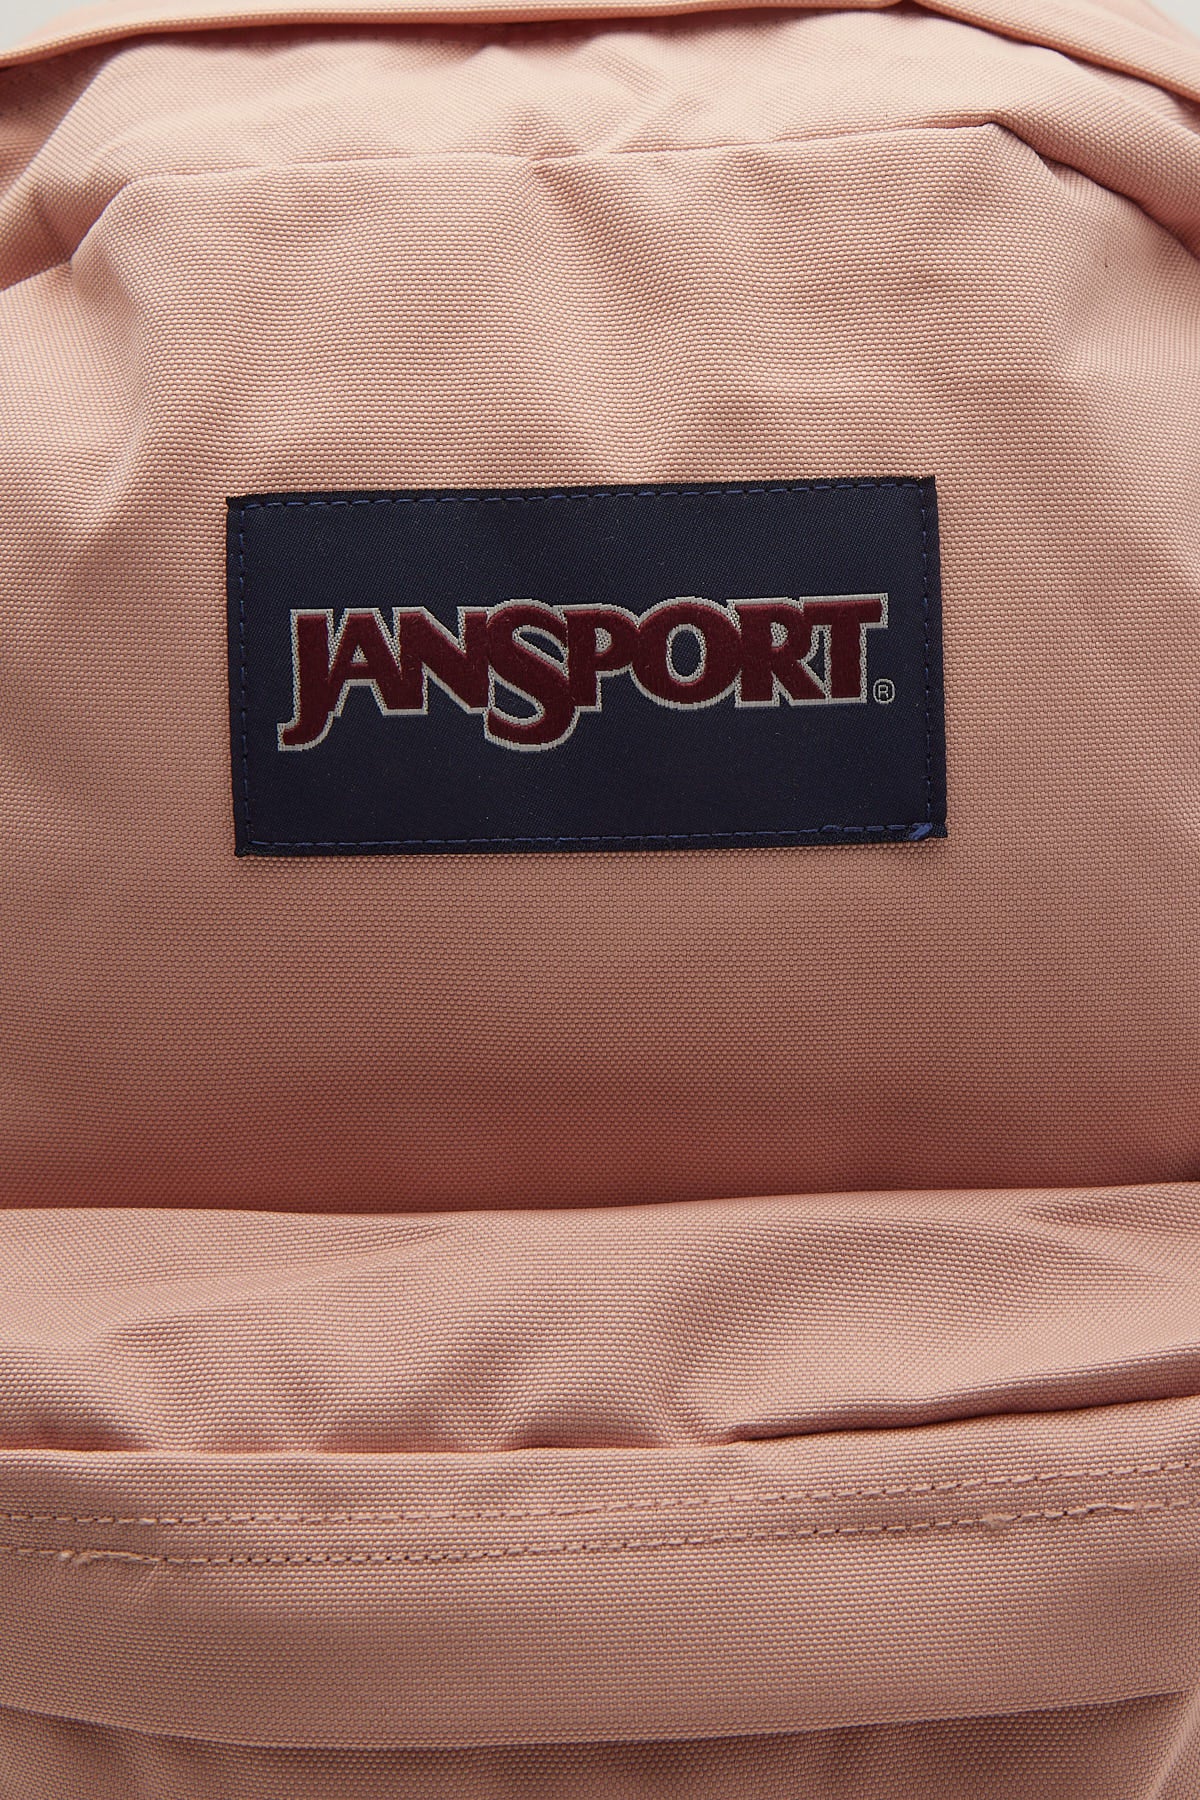 Jansport Superbreak Plus Backpack Misty Rose